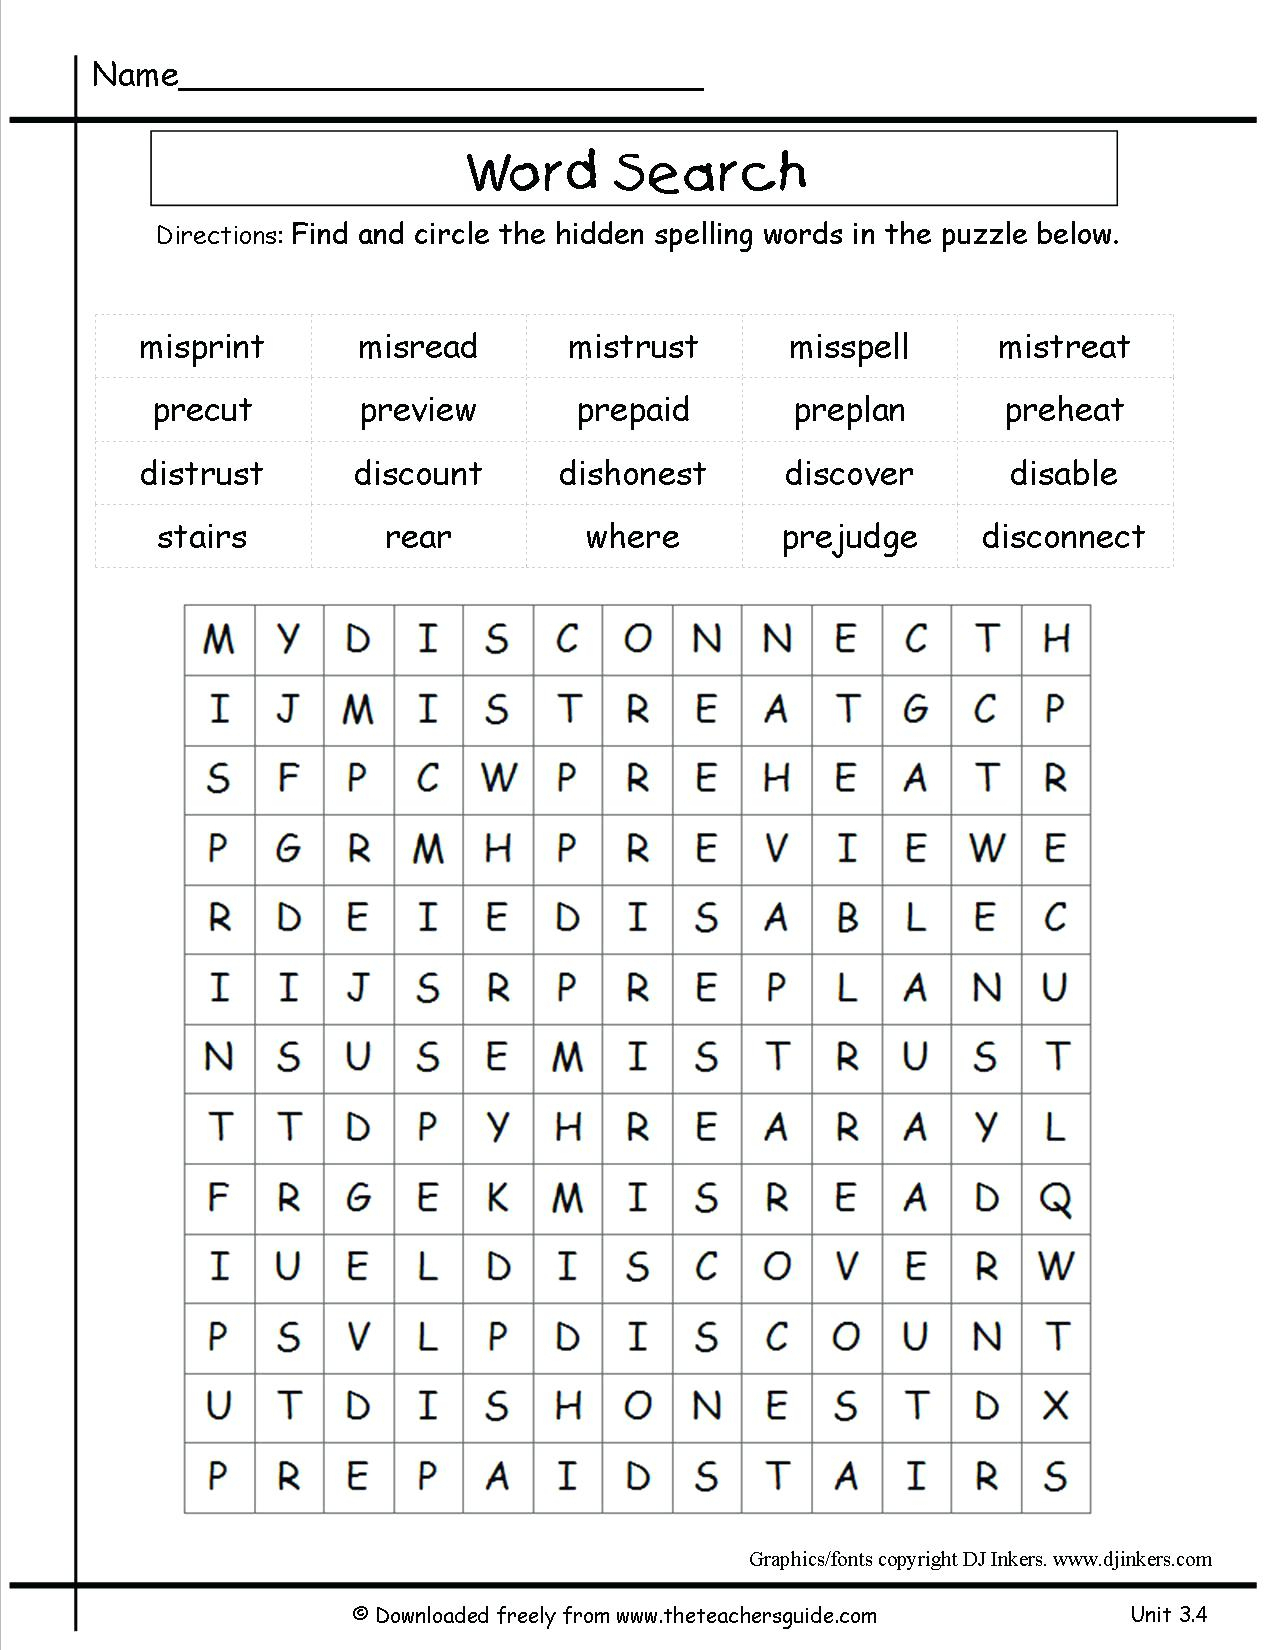 free-printable-wonderword-puzzles-online-freeprintabletm-freeprintabletm